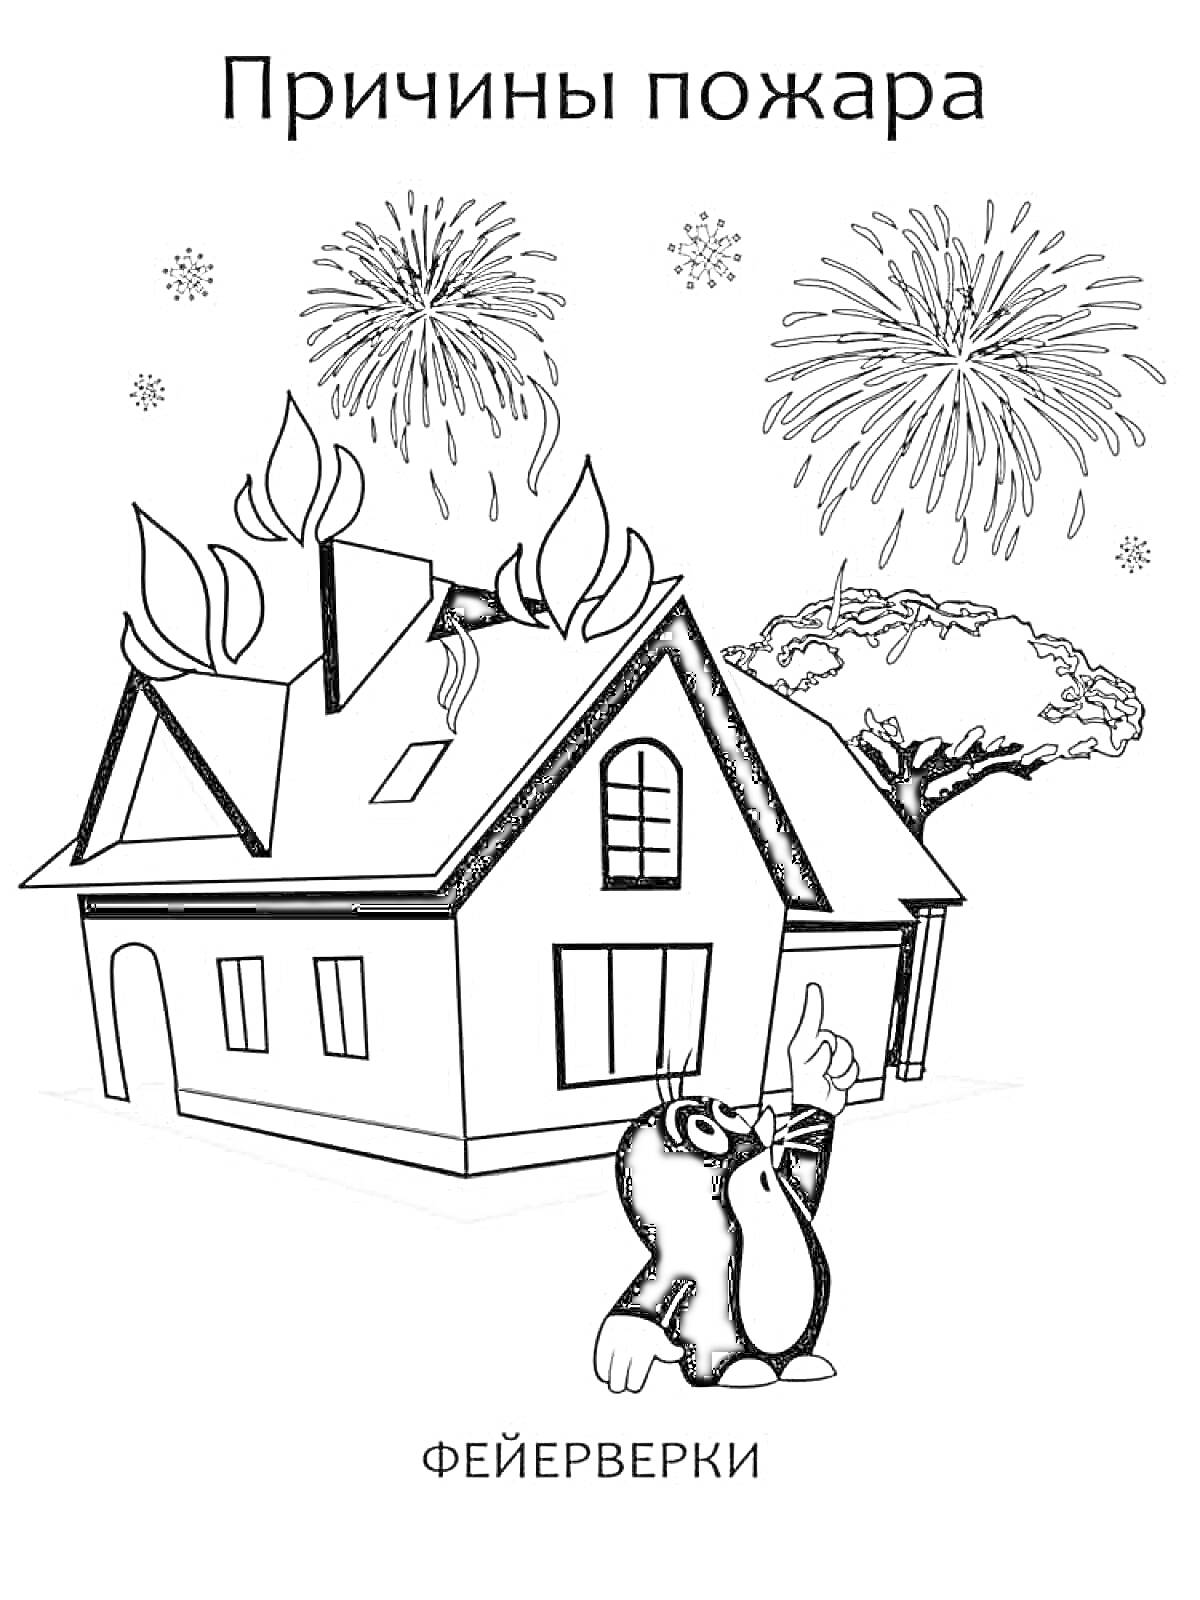 Дом в огне из-за фейерверков на фоне дерева и персонажа, указывающего на небо